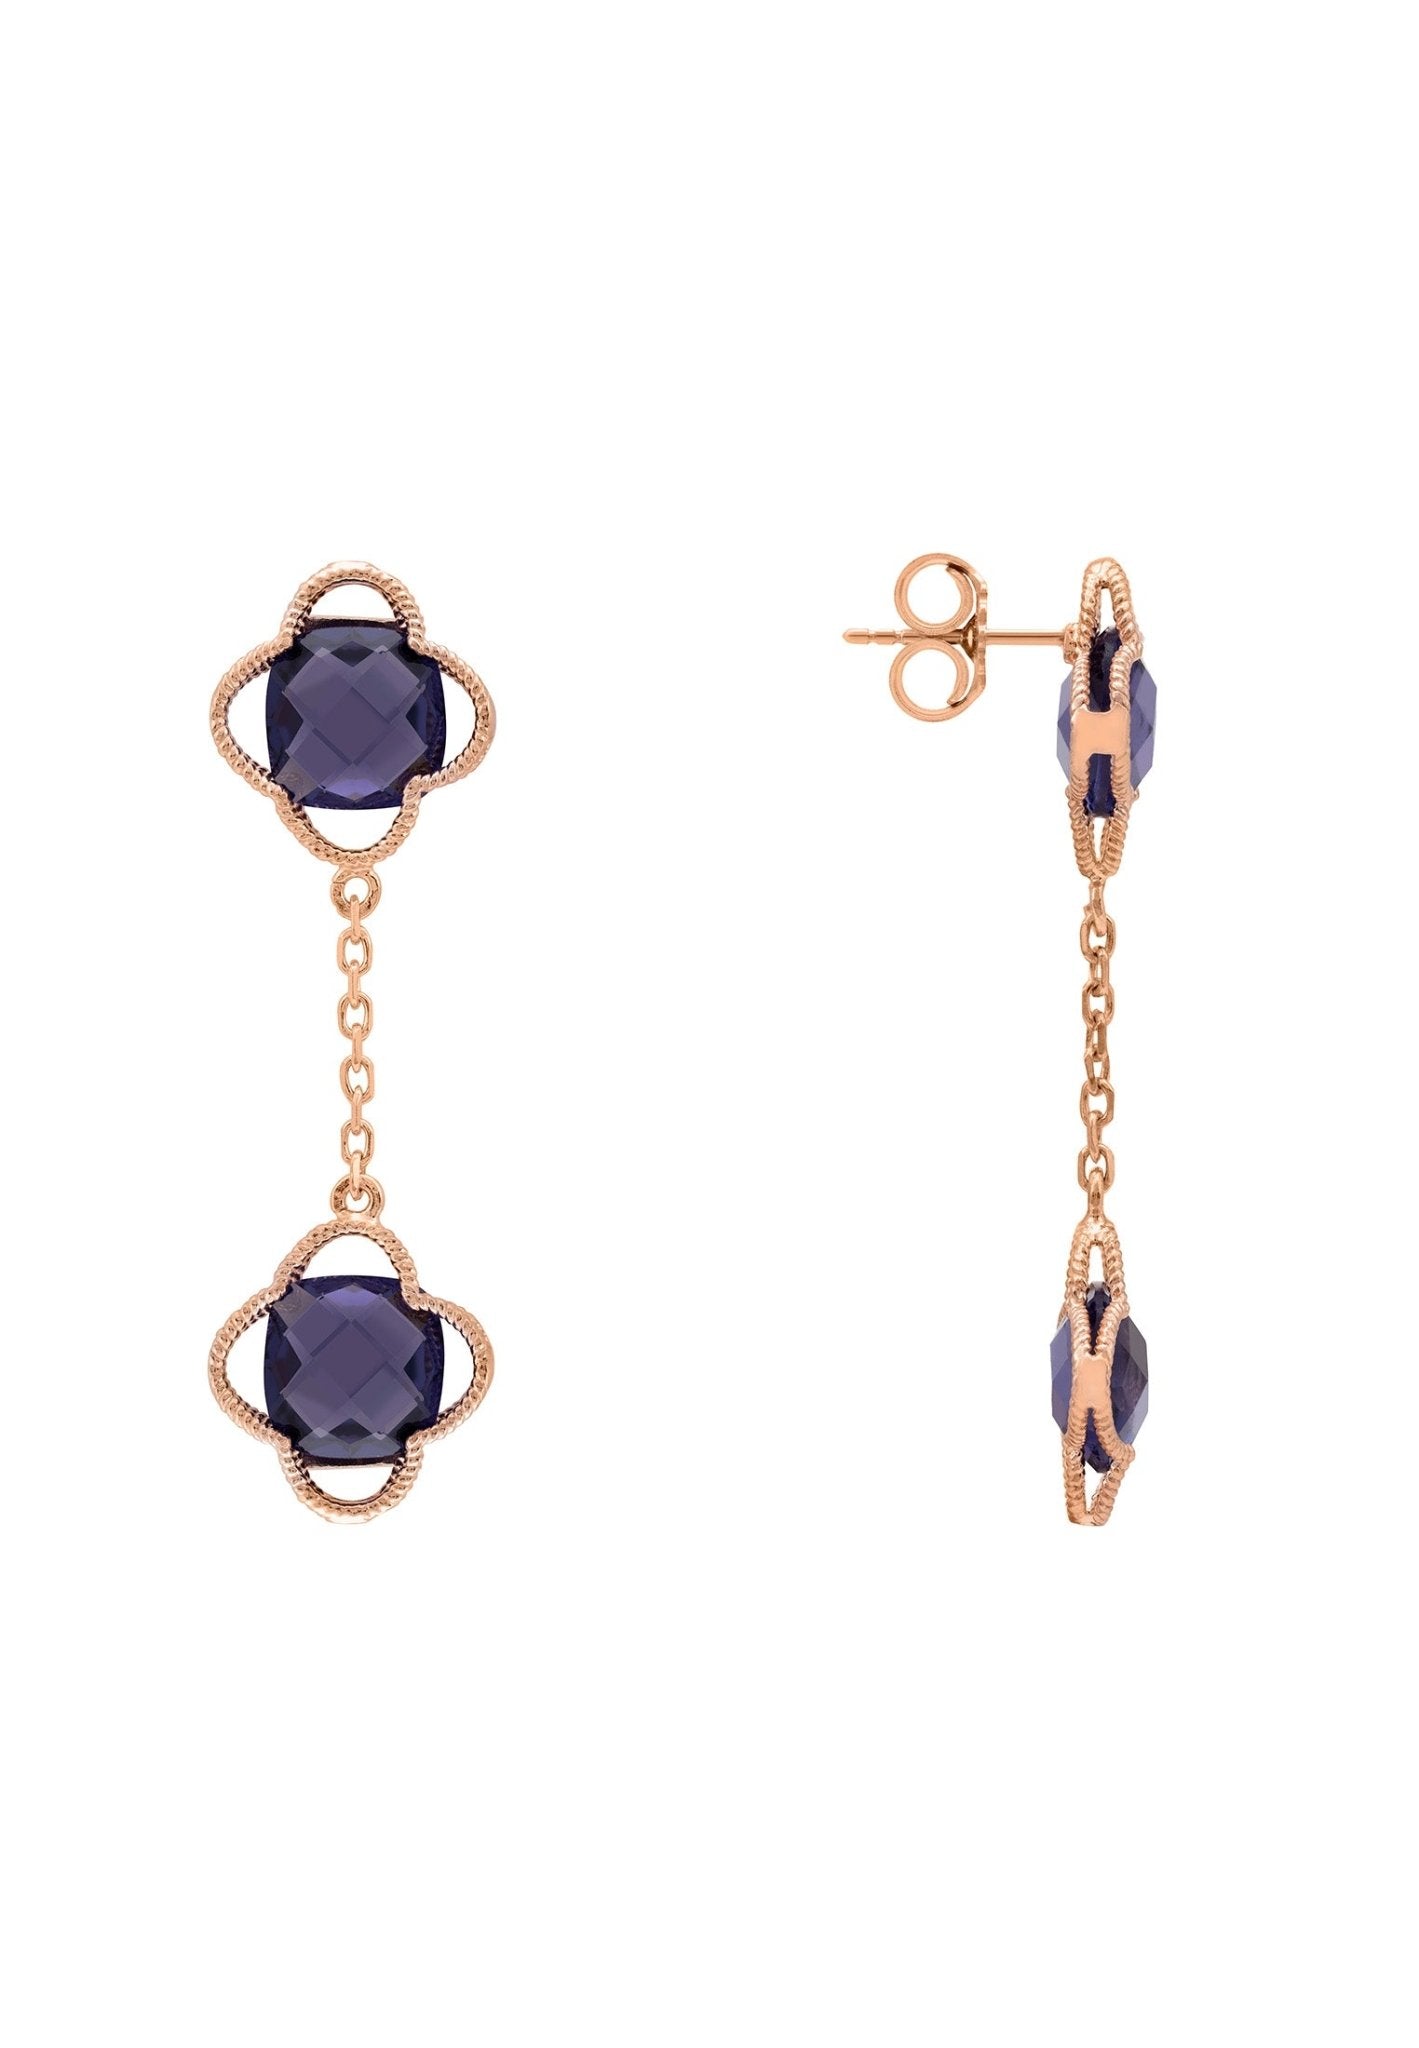 Open Clover Double Drop Earrings Rosegold Amethyst - LATELITA Earrings